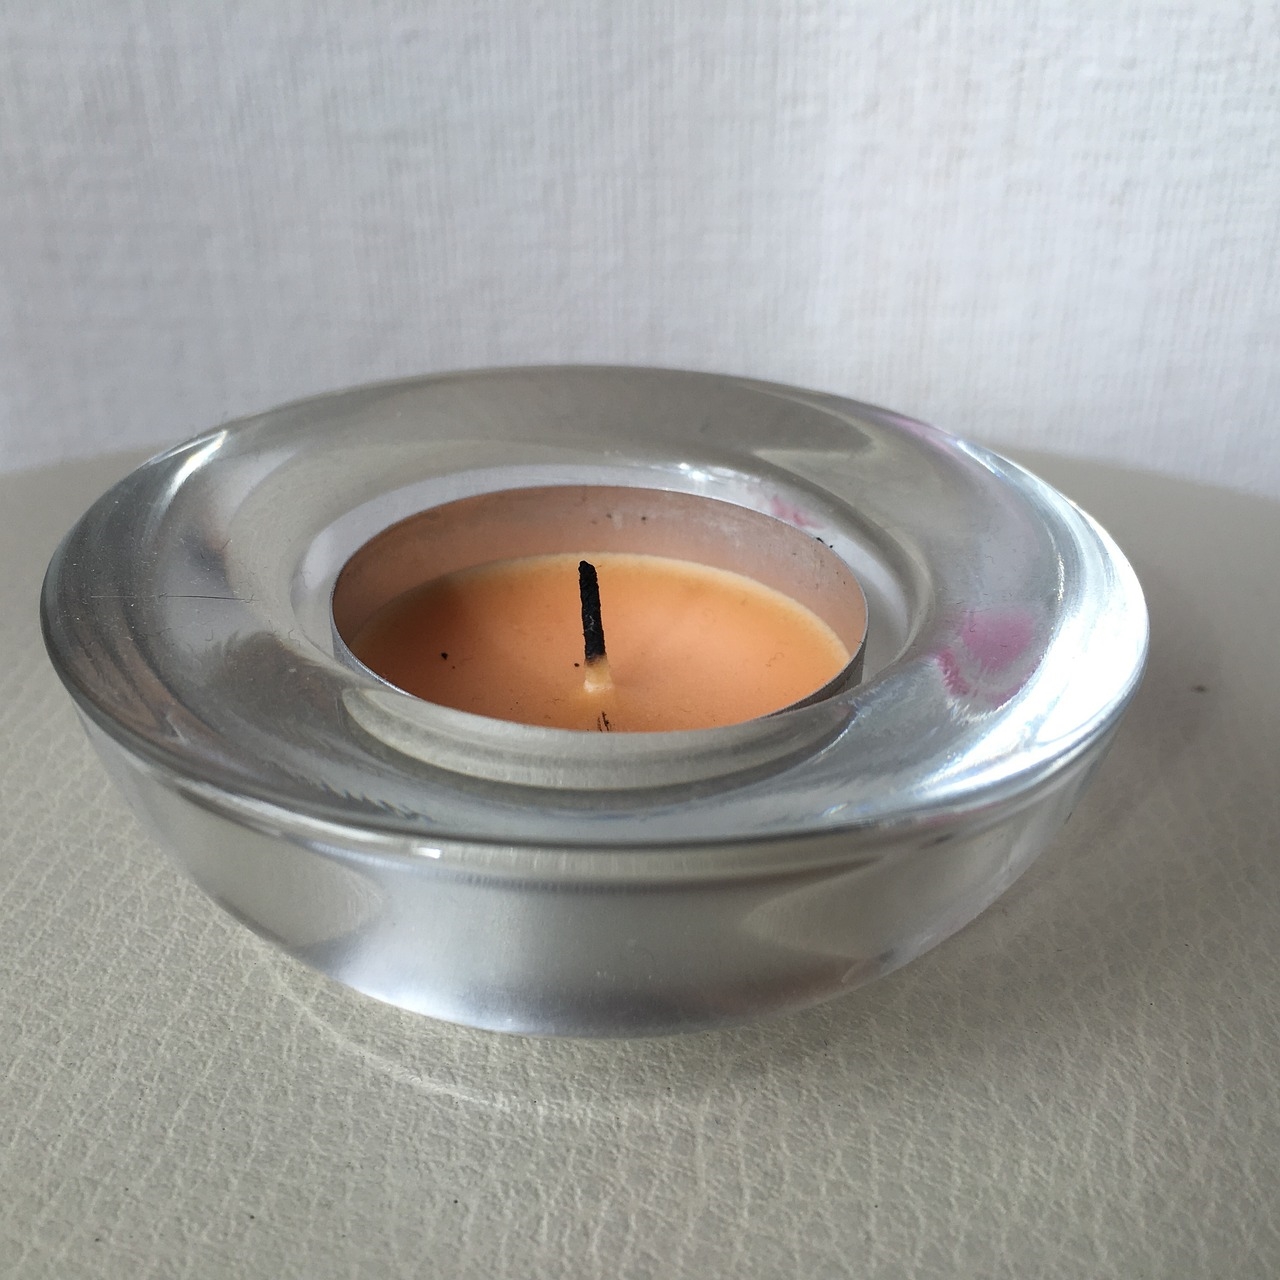 jak zrobić świeczkę zapachową w domu